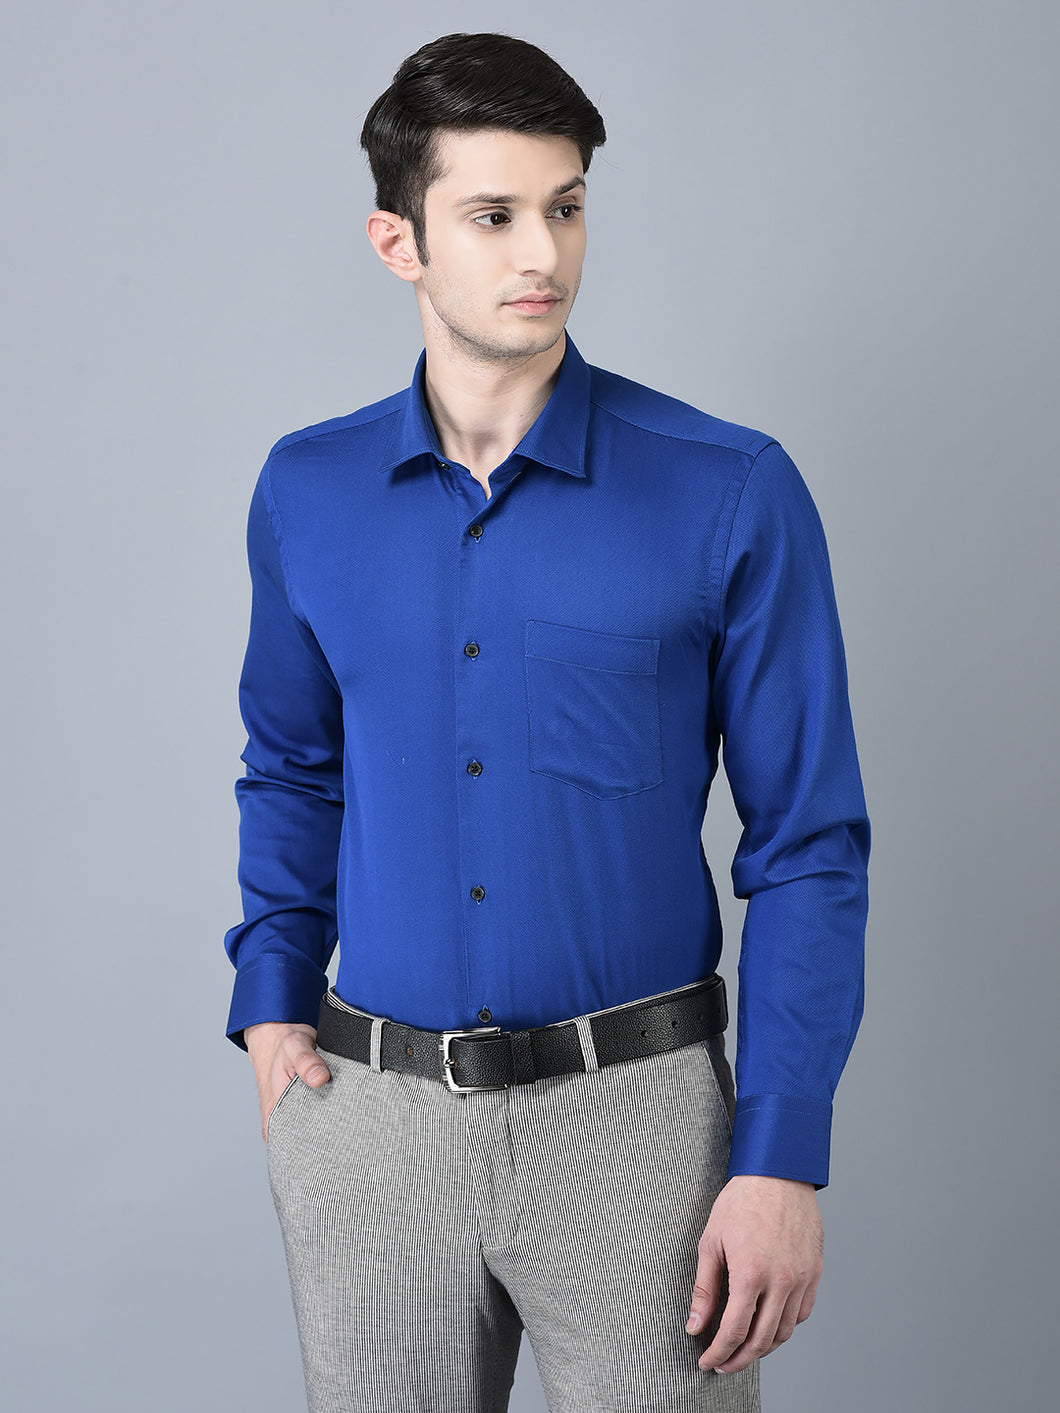 CANOE MEN Formal Shirt Blue Color Cotton Fabric Button Closure